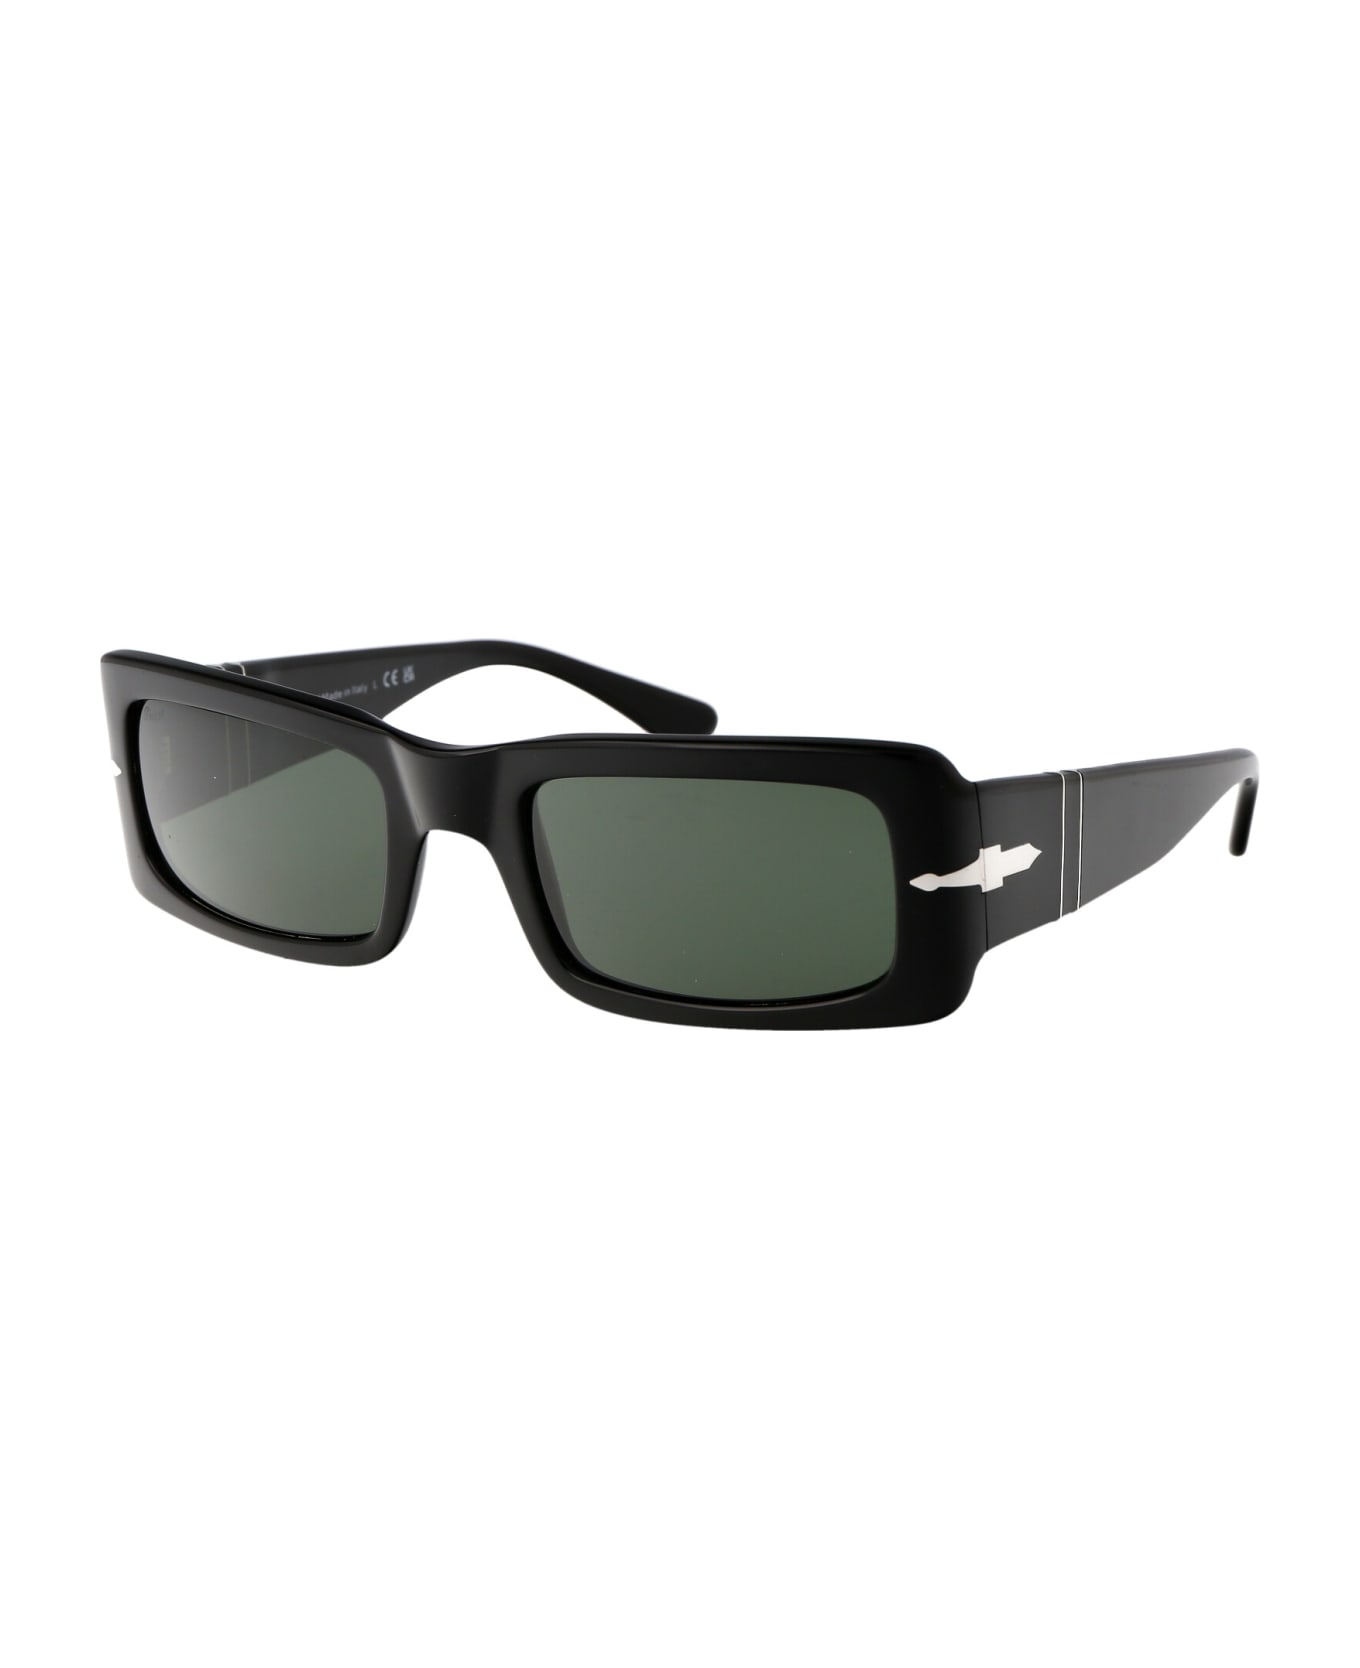 Persol Francis Sunglasses - 95/31 BLACK